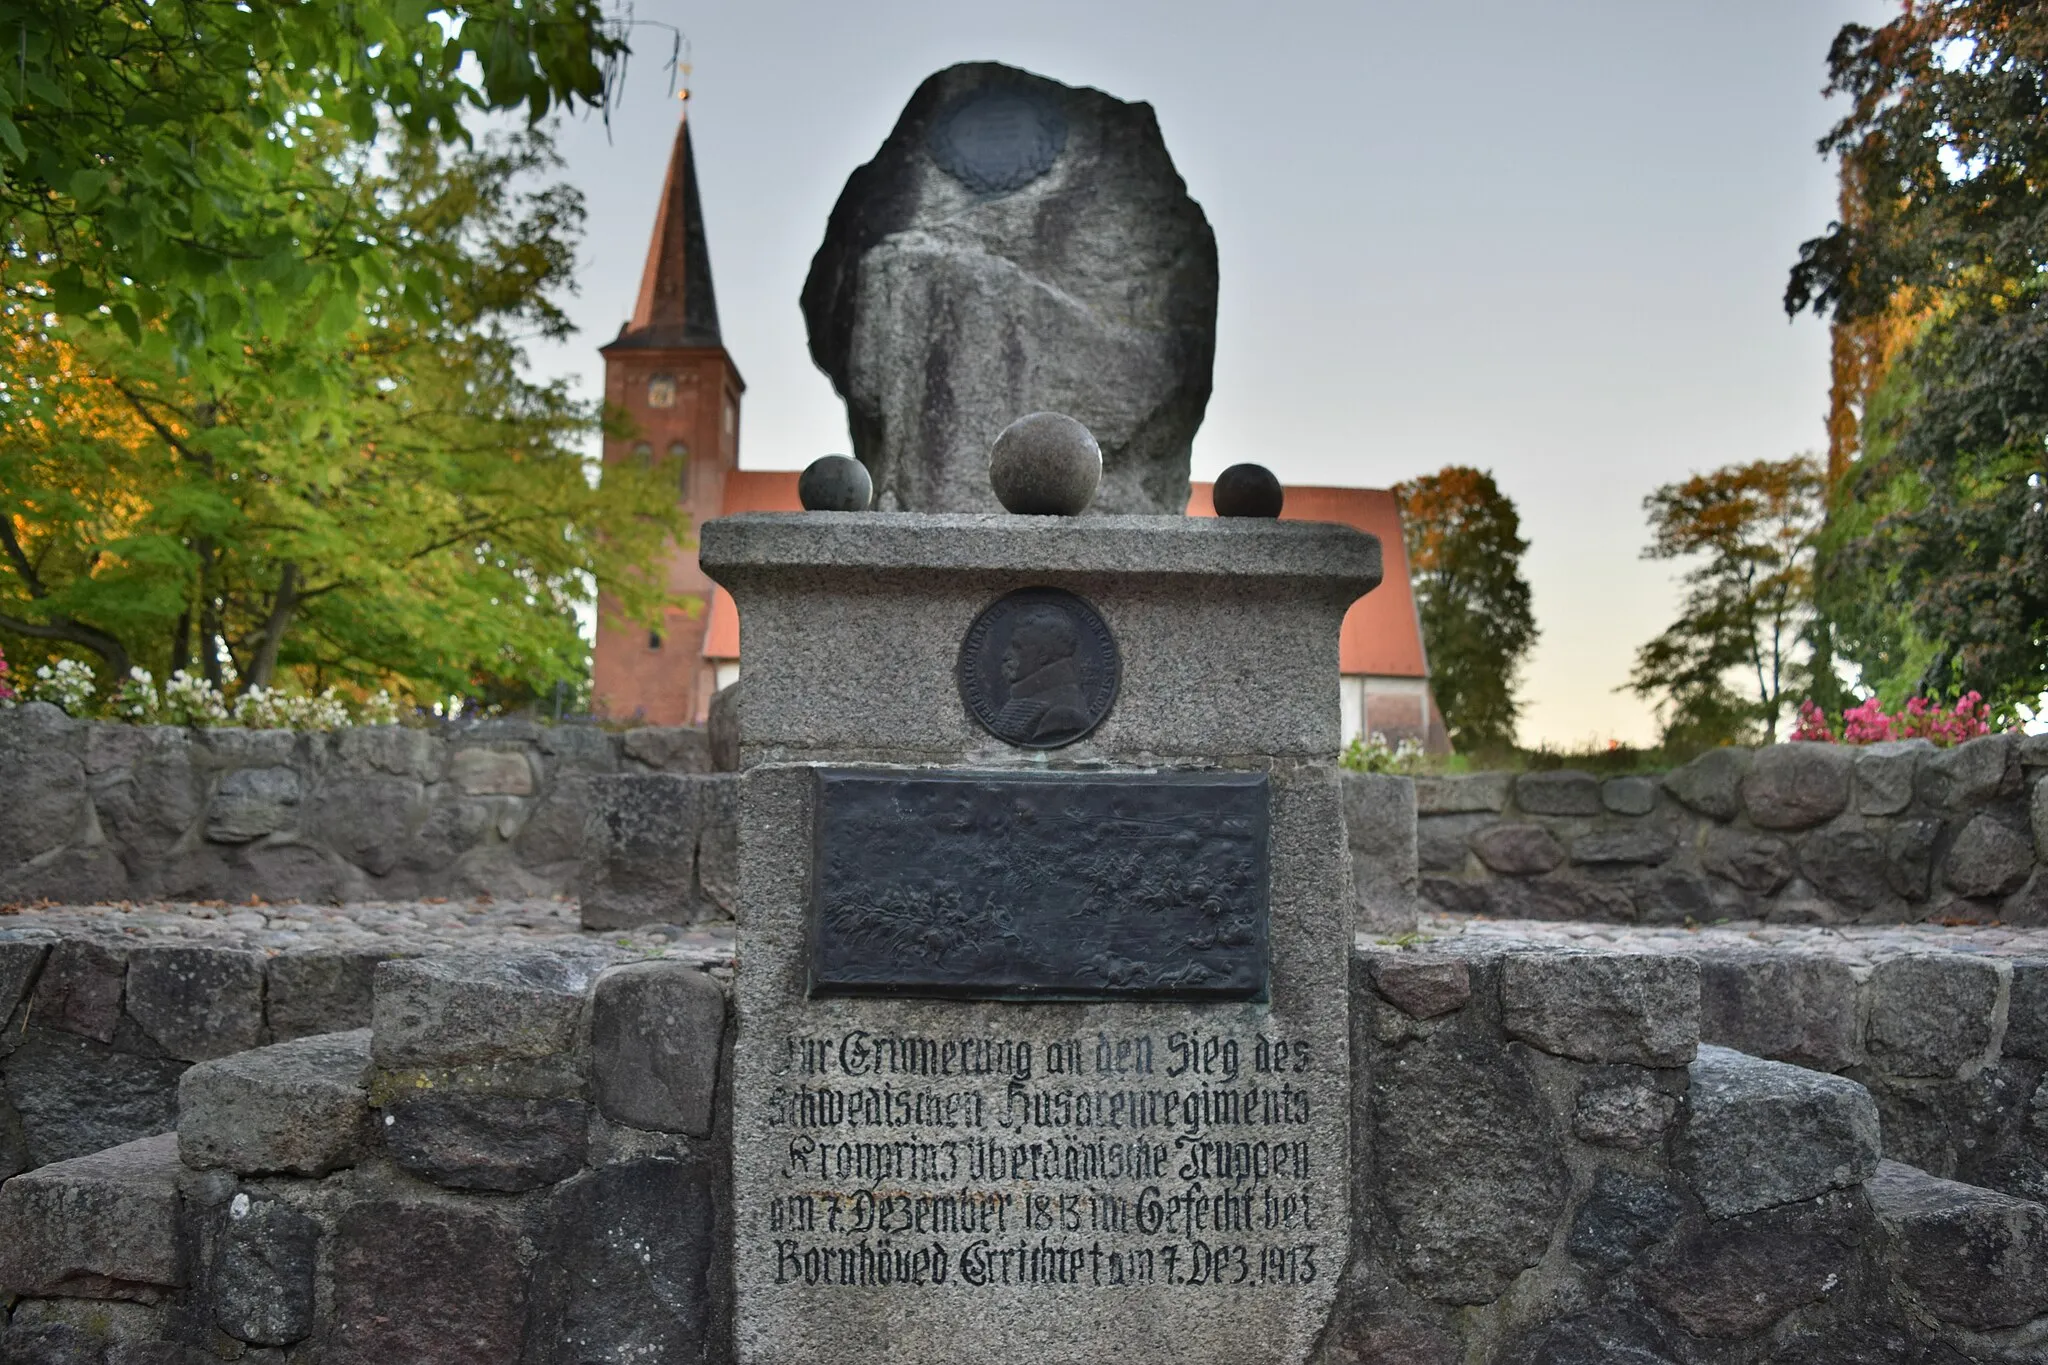 Photo showing: Gedenkstein zur Erinnerung an den Sieg des Schwedischen Husarenregiments Kronprinz über dänische Truppen im Gefecht bei Bornhöved am 7. Dezember 1813, errichtet am 7. Dezember 1913.